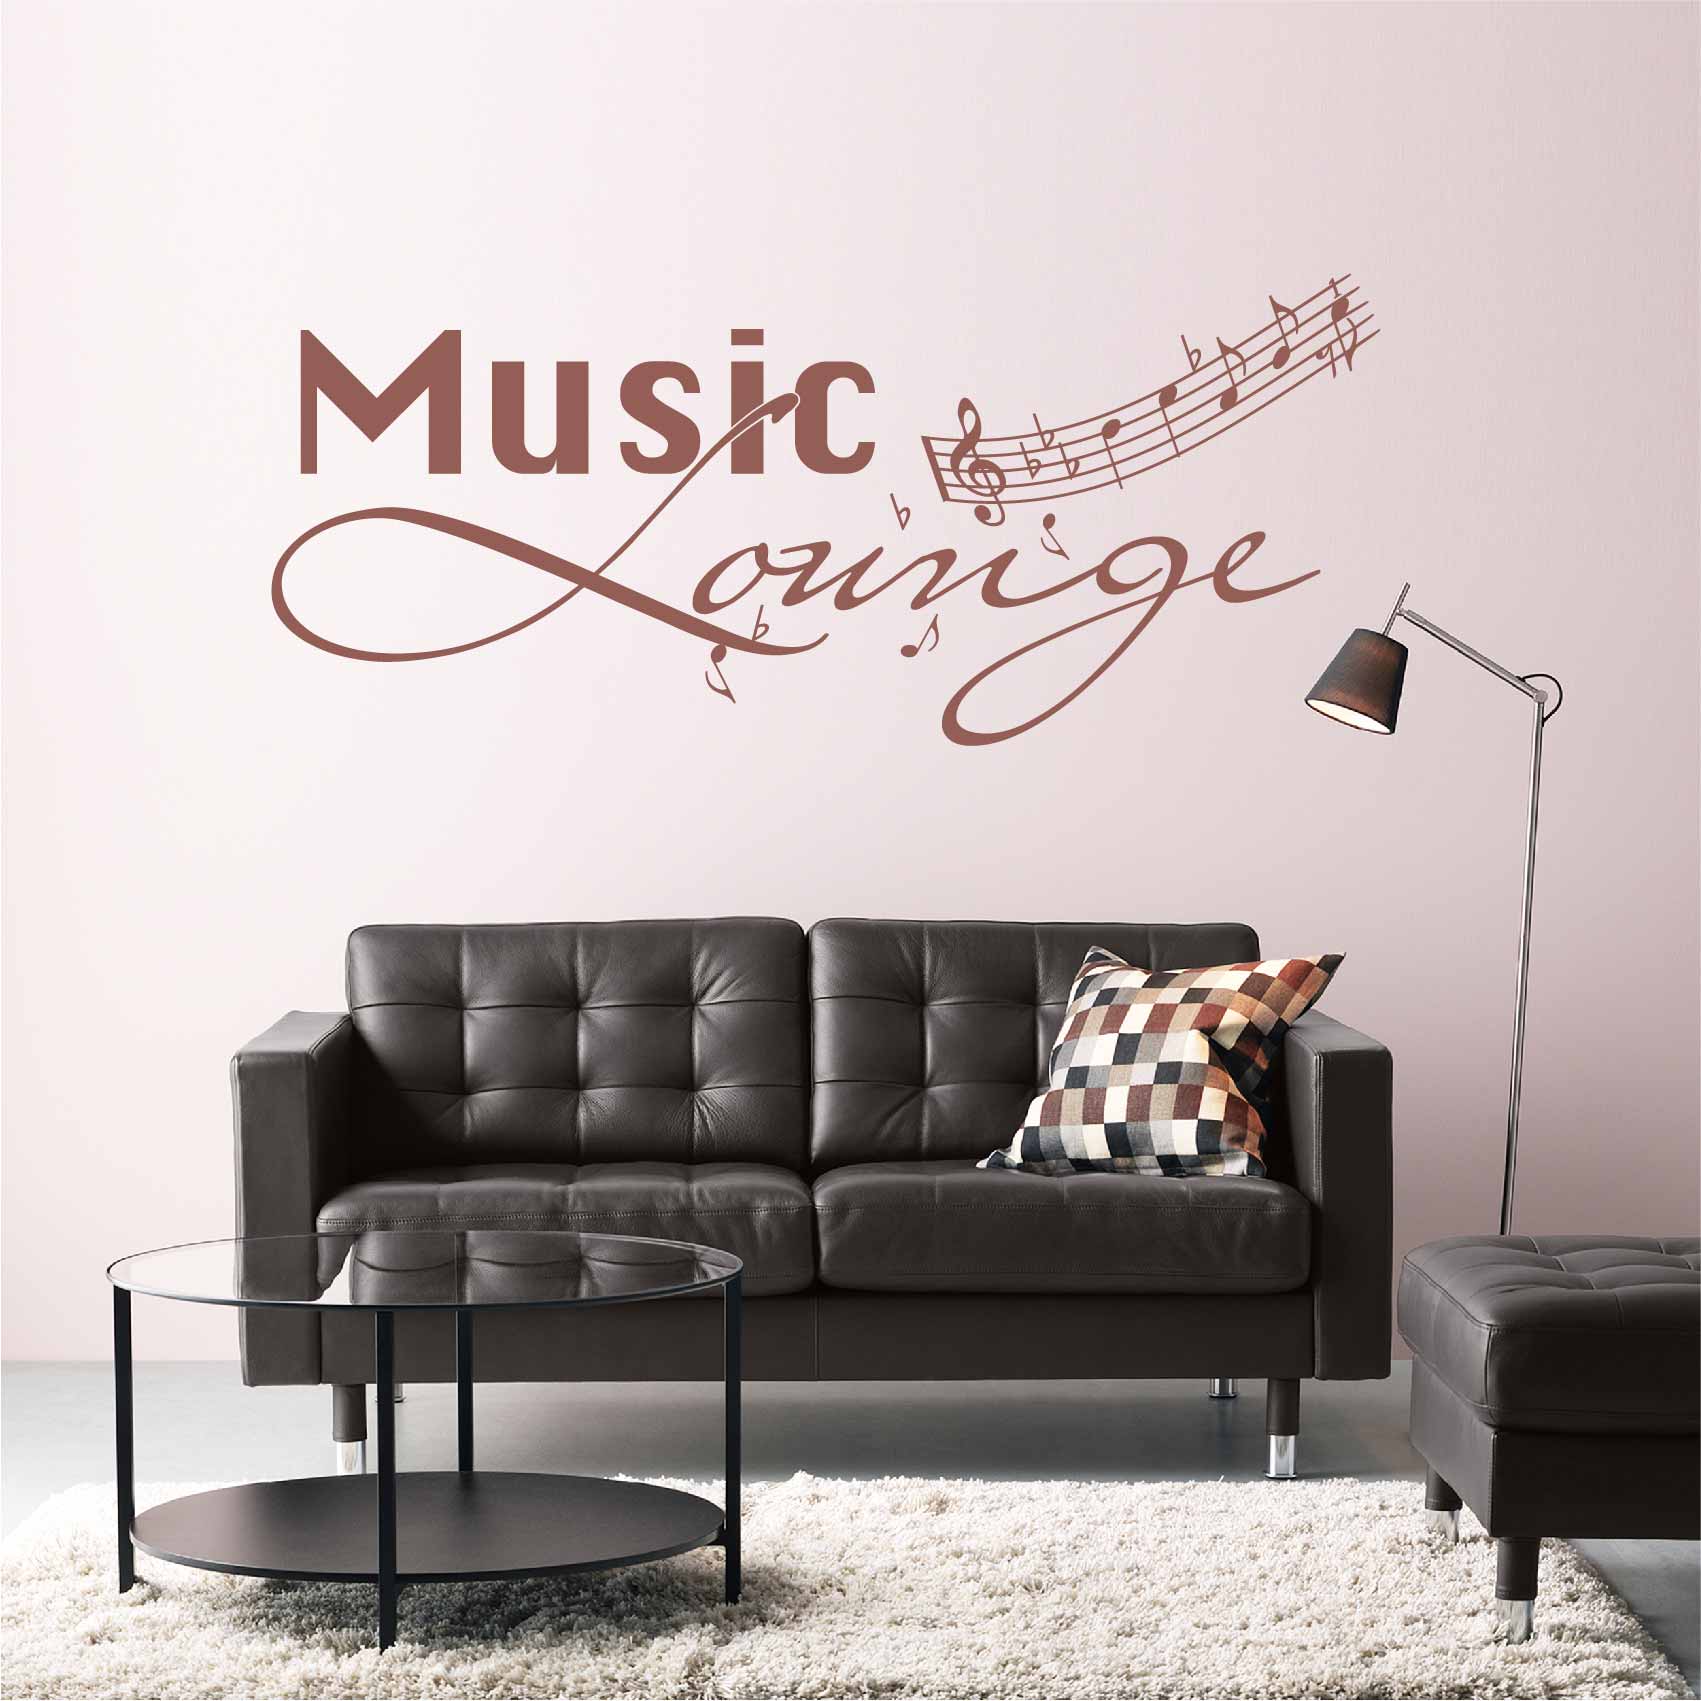 stickers-mural-music-lounge-ref31musique-autocollant-muraux-musique-sticker-mural-musical-note-notes-deco-salon-chambre-adulte-ado-enfant